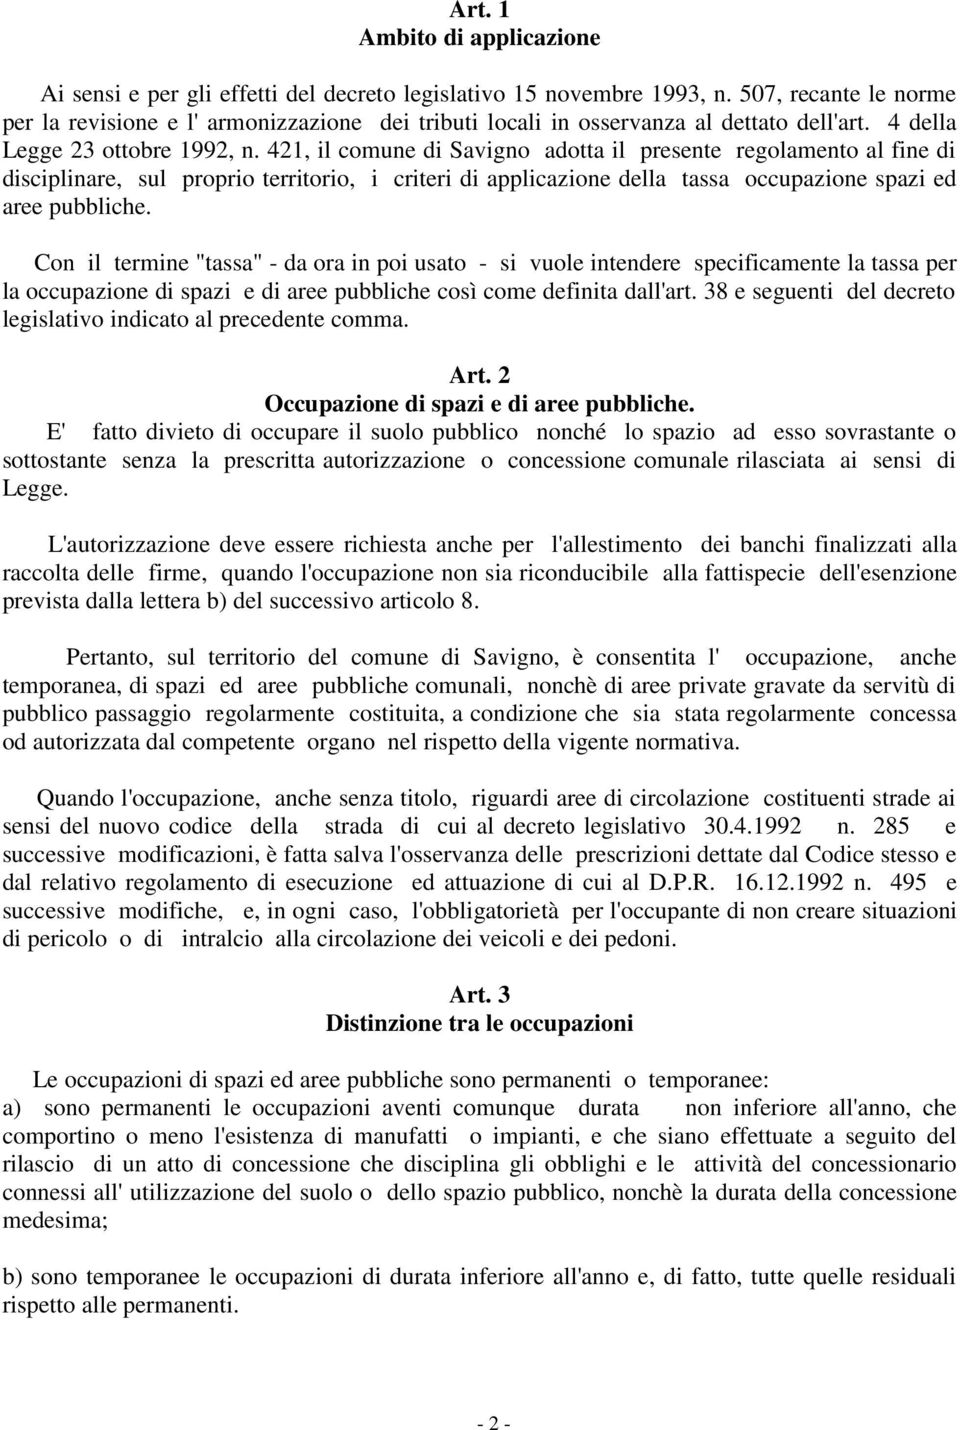 421, il comune di Savigno adotta il presente regolamento al fine di disciplinare, sul proprio territorio, i criteri di applicazione della tassa occupazione spazi ed aree pubbliche.